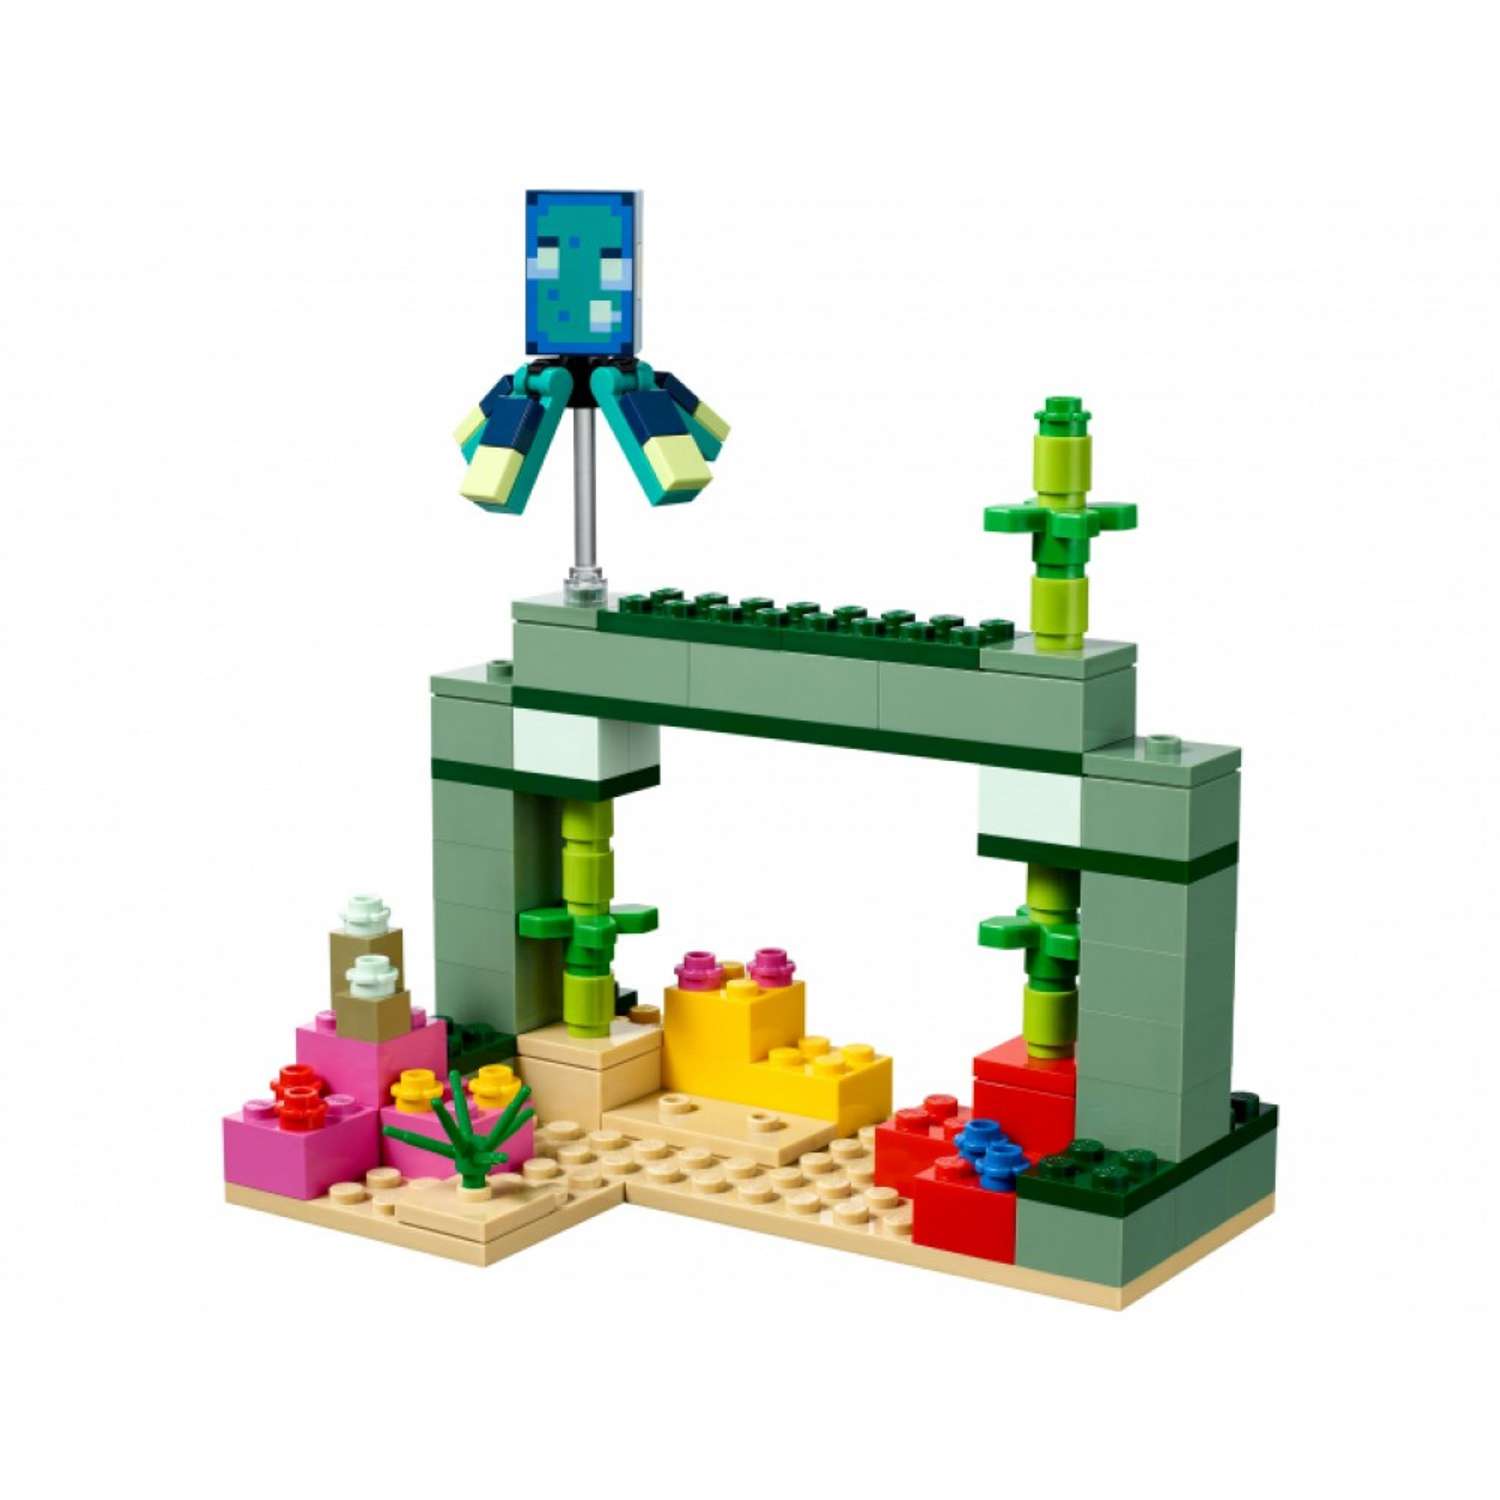 Конструктор LEGO Minecraft Битва со стражем 21180 - фото 3